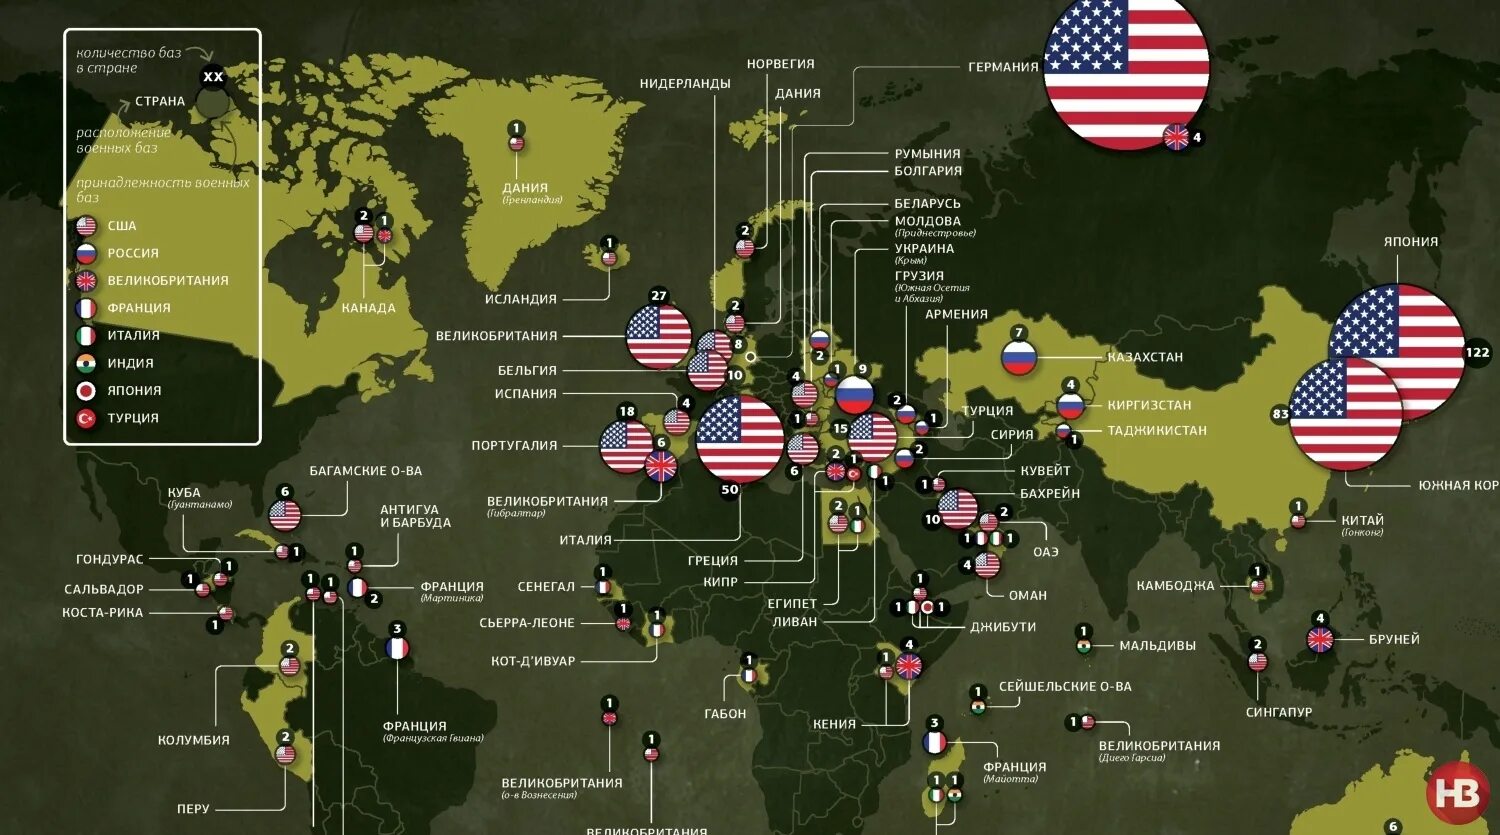 Базы НАТО И армии США В мире.